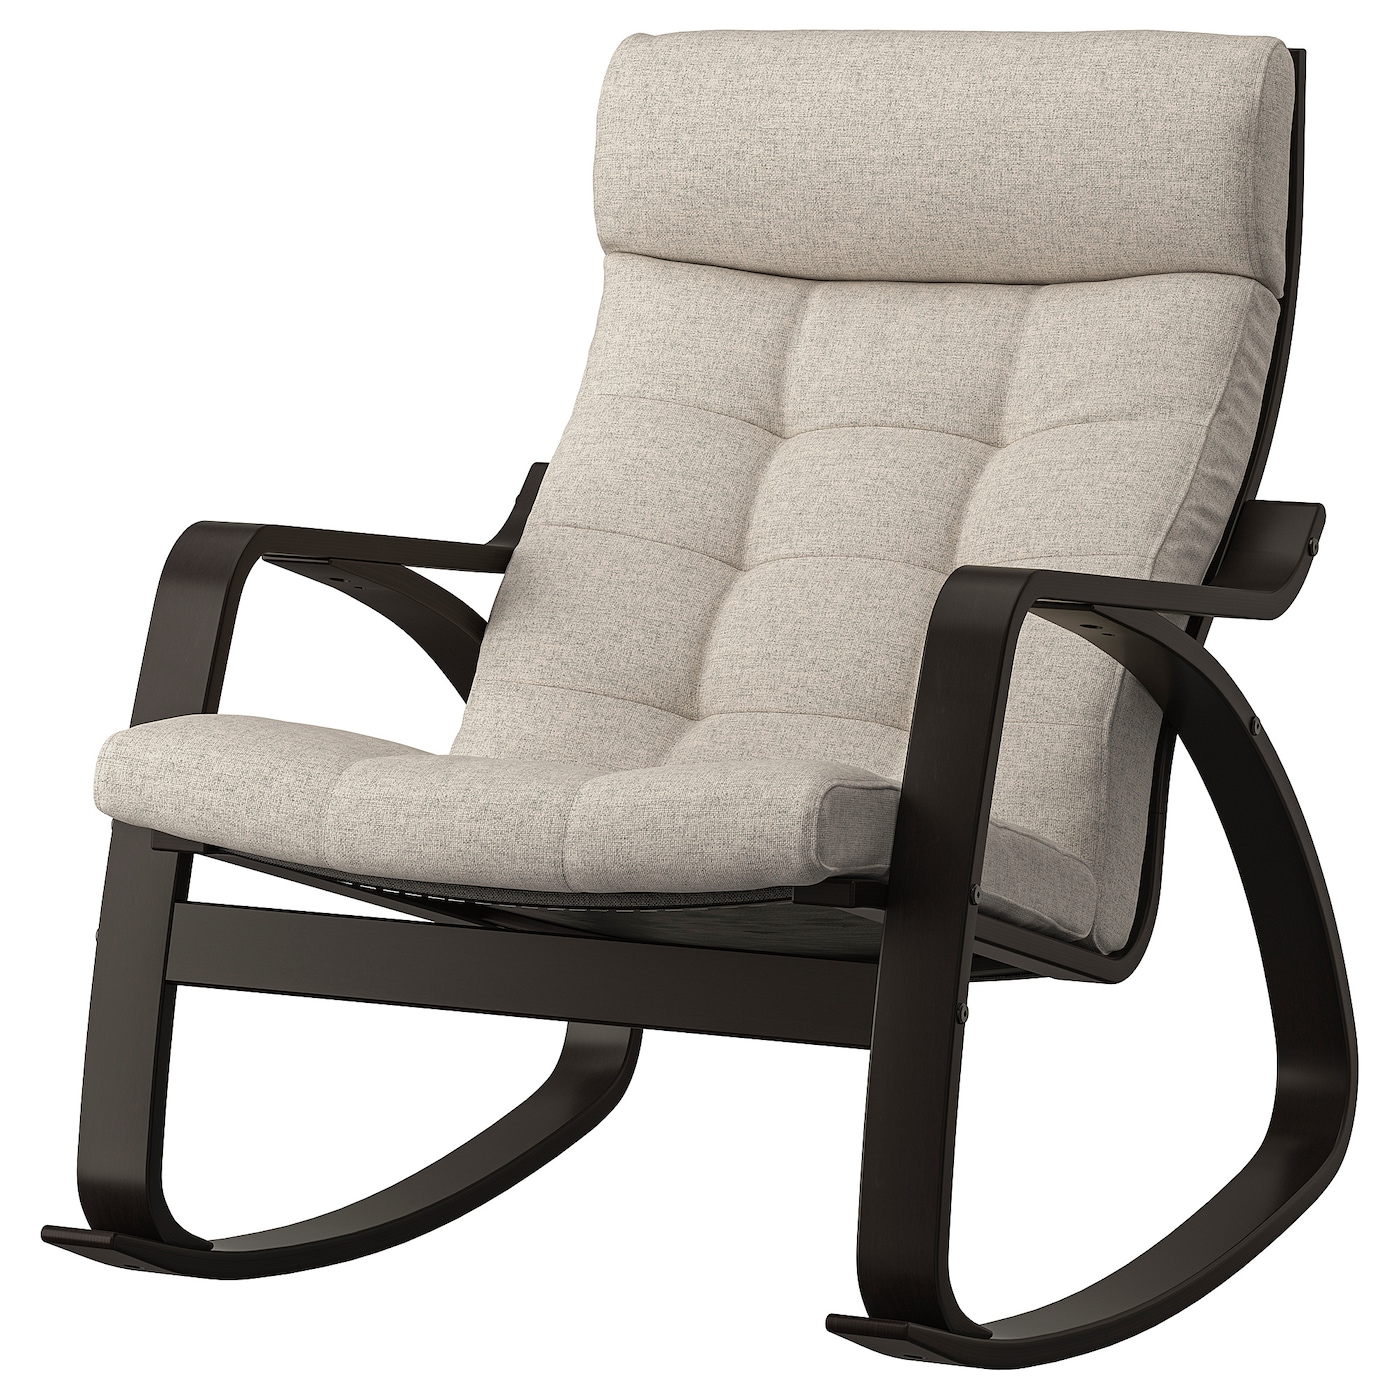 детское кресло качалка lazychild удобное кресло качалка с шейкером для сна детская кроватка качалка с колесами ПОЭНГ Кресло-качалка, черно-коричневый/Гуннаред бежевый POÄNG IKEA